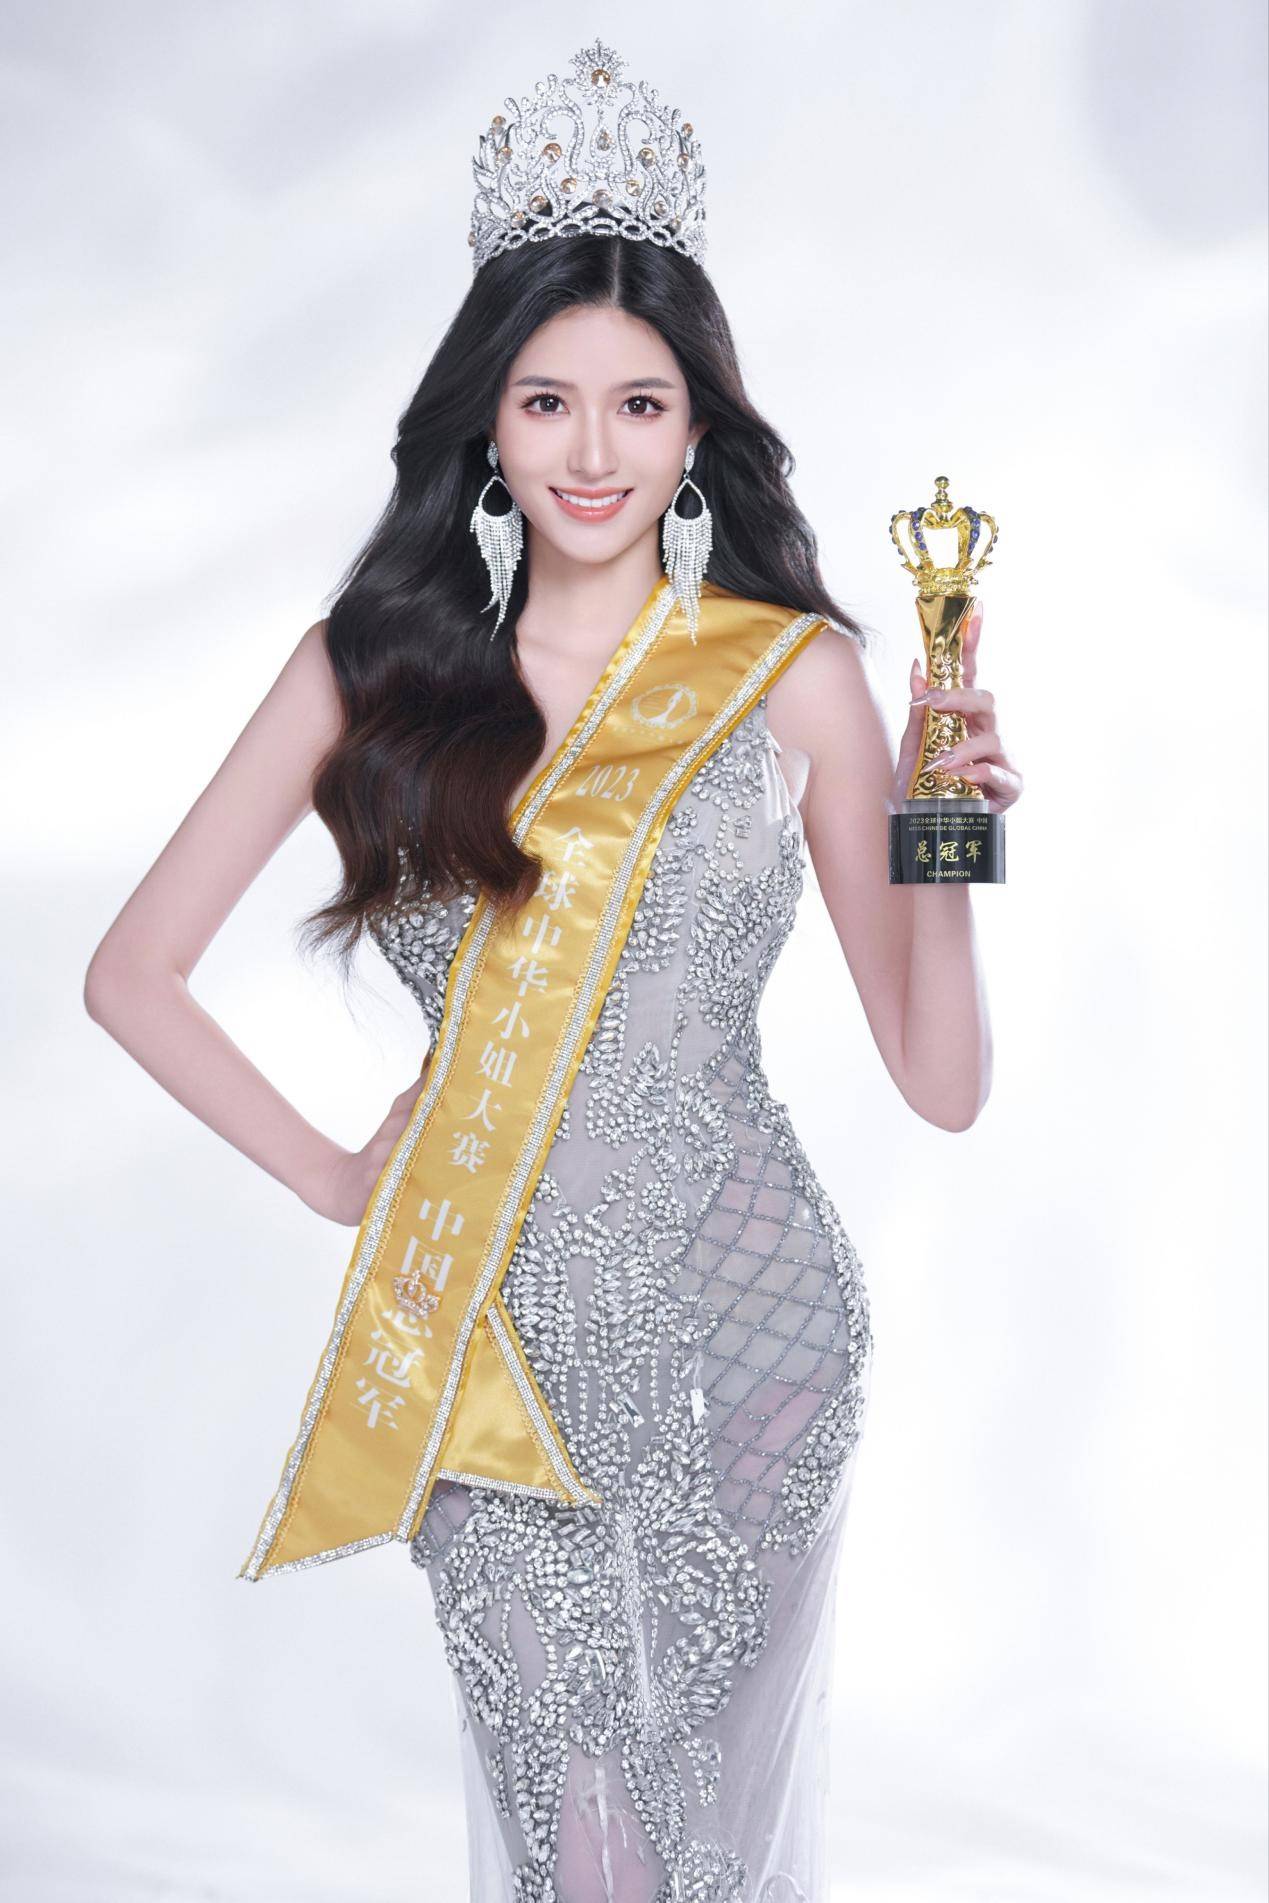 恭喜杨雯摘得全球中华小姐大赛全国总冠军